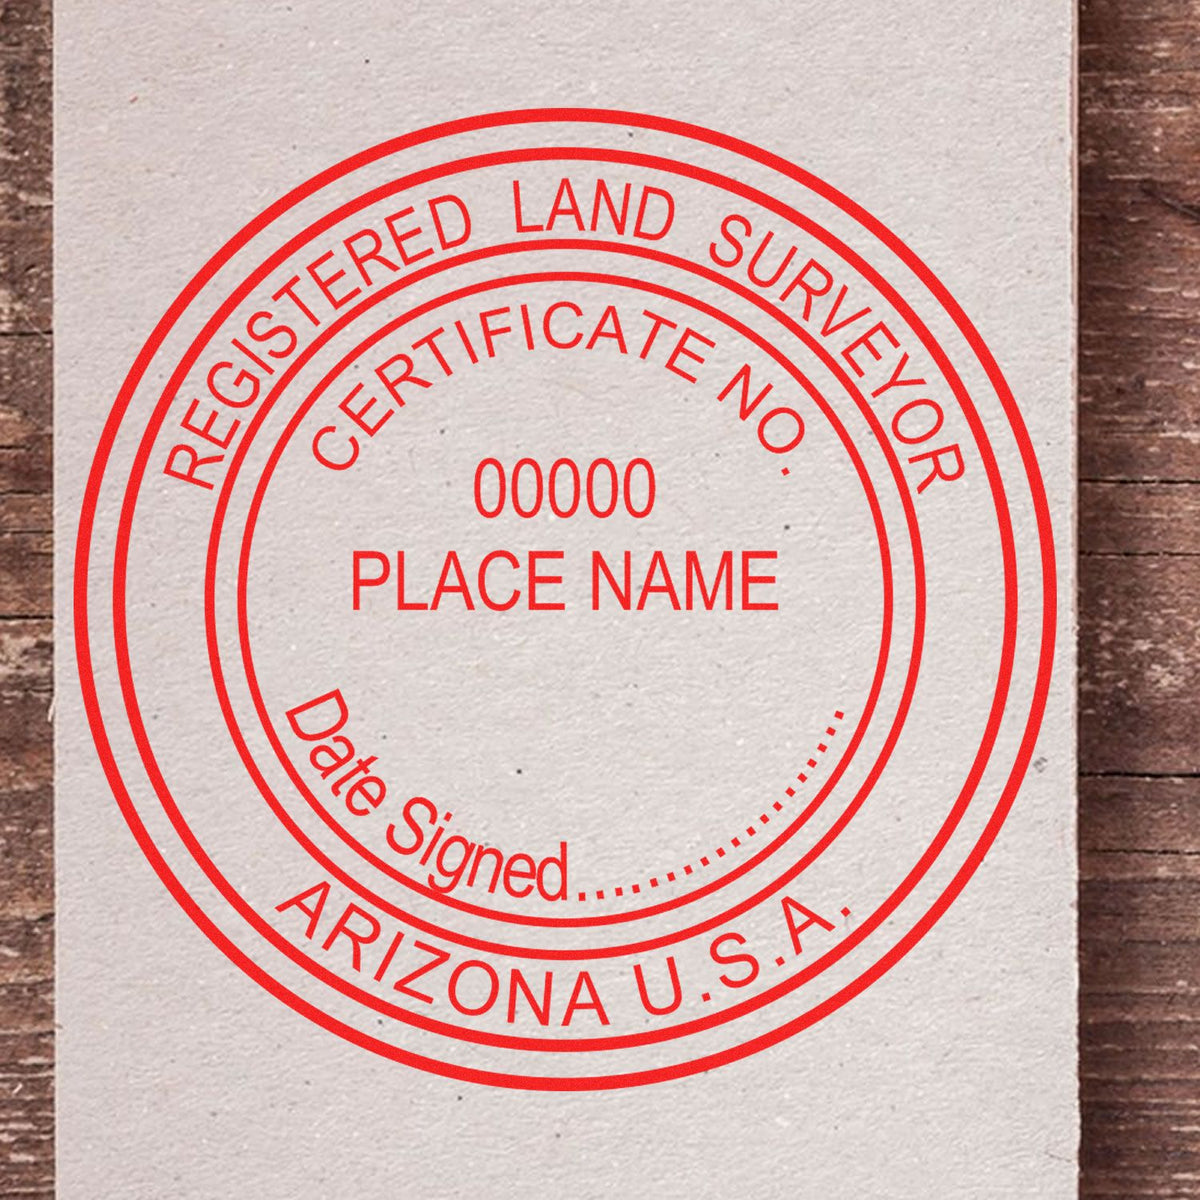 Arizona Land Surveyor Seal Stamp In Use Photo